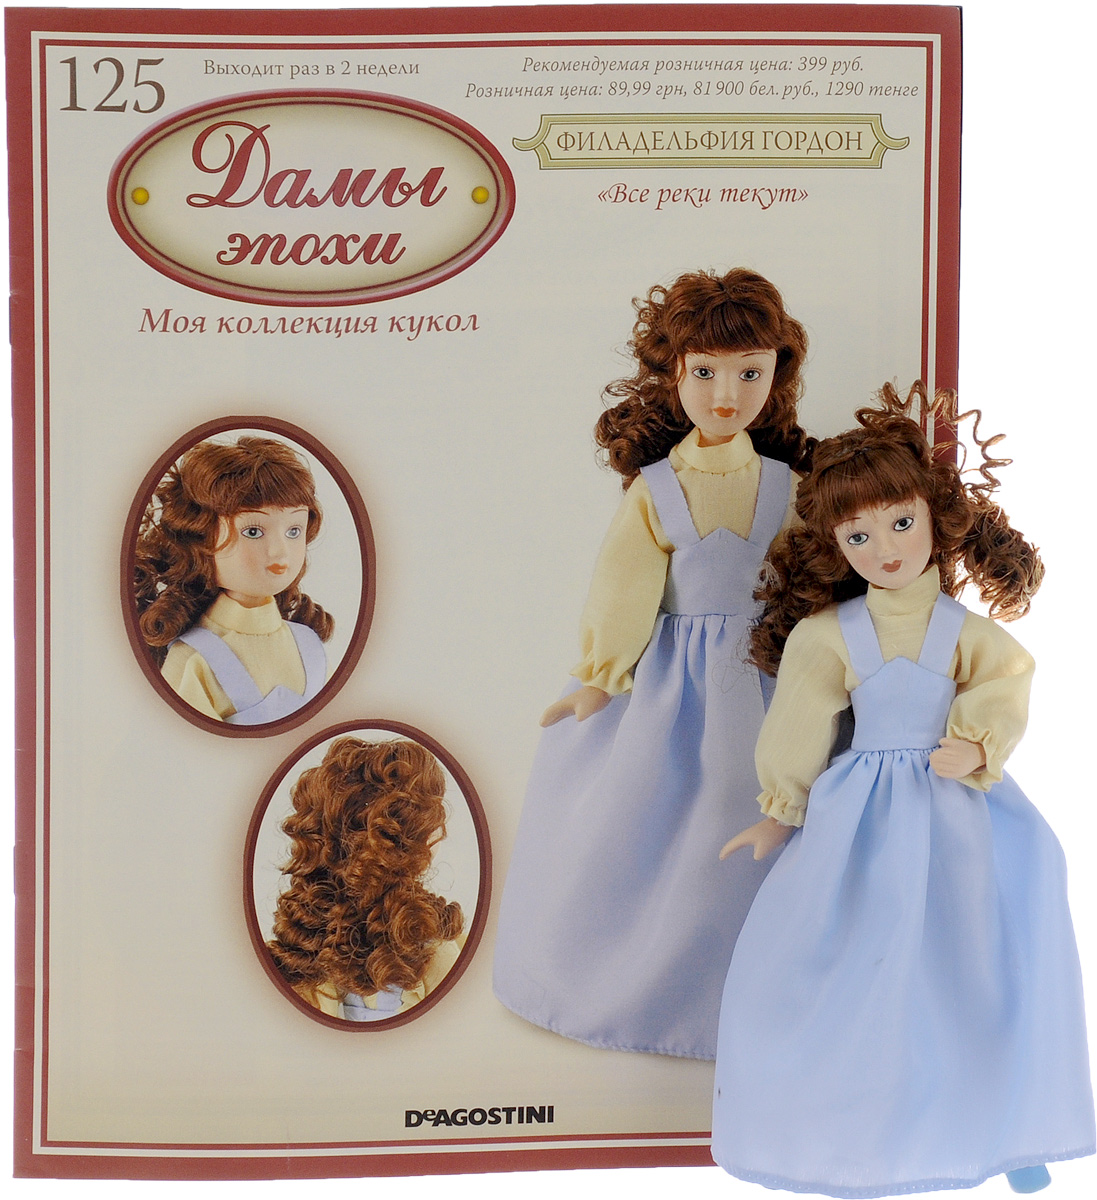 Кукла журнал дамы эпохи. Фарфоровые куклы с журналом дамы эпохи. Куклы дамы эпохи ДЕАГОСТИНИ вся коллекция. Журнал с куклами дамы эпохи.